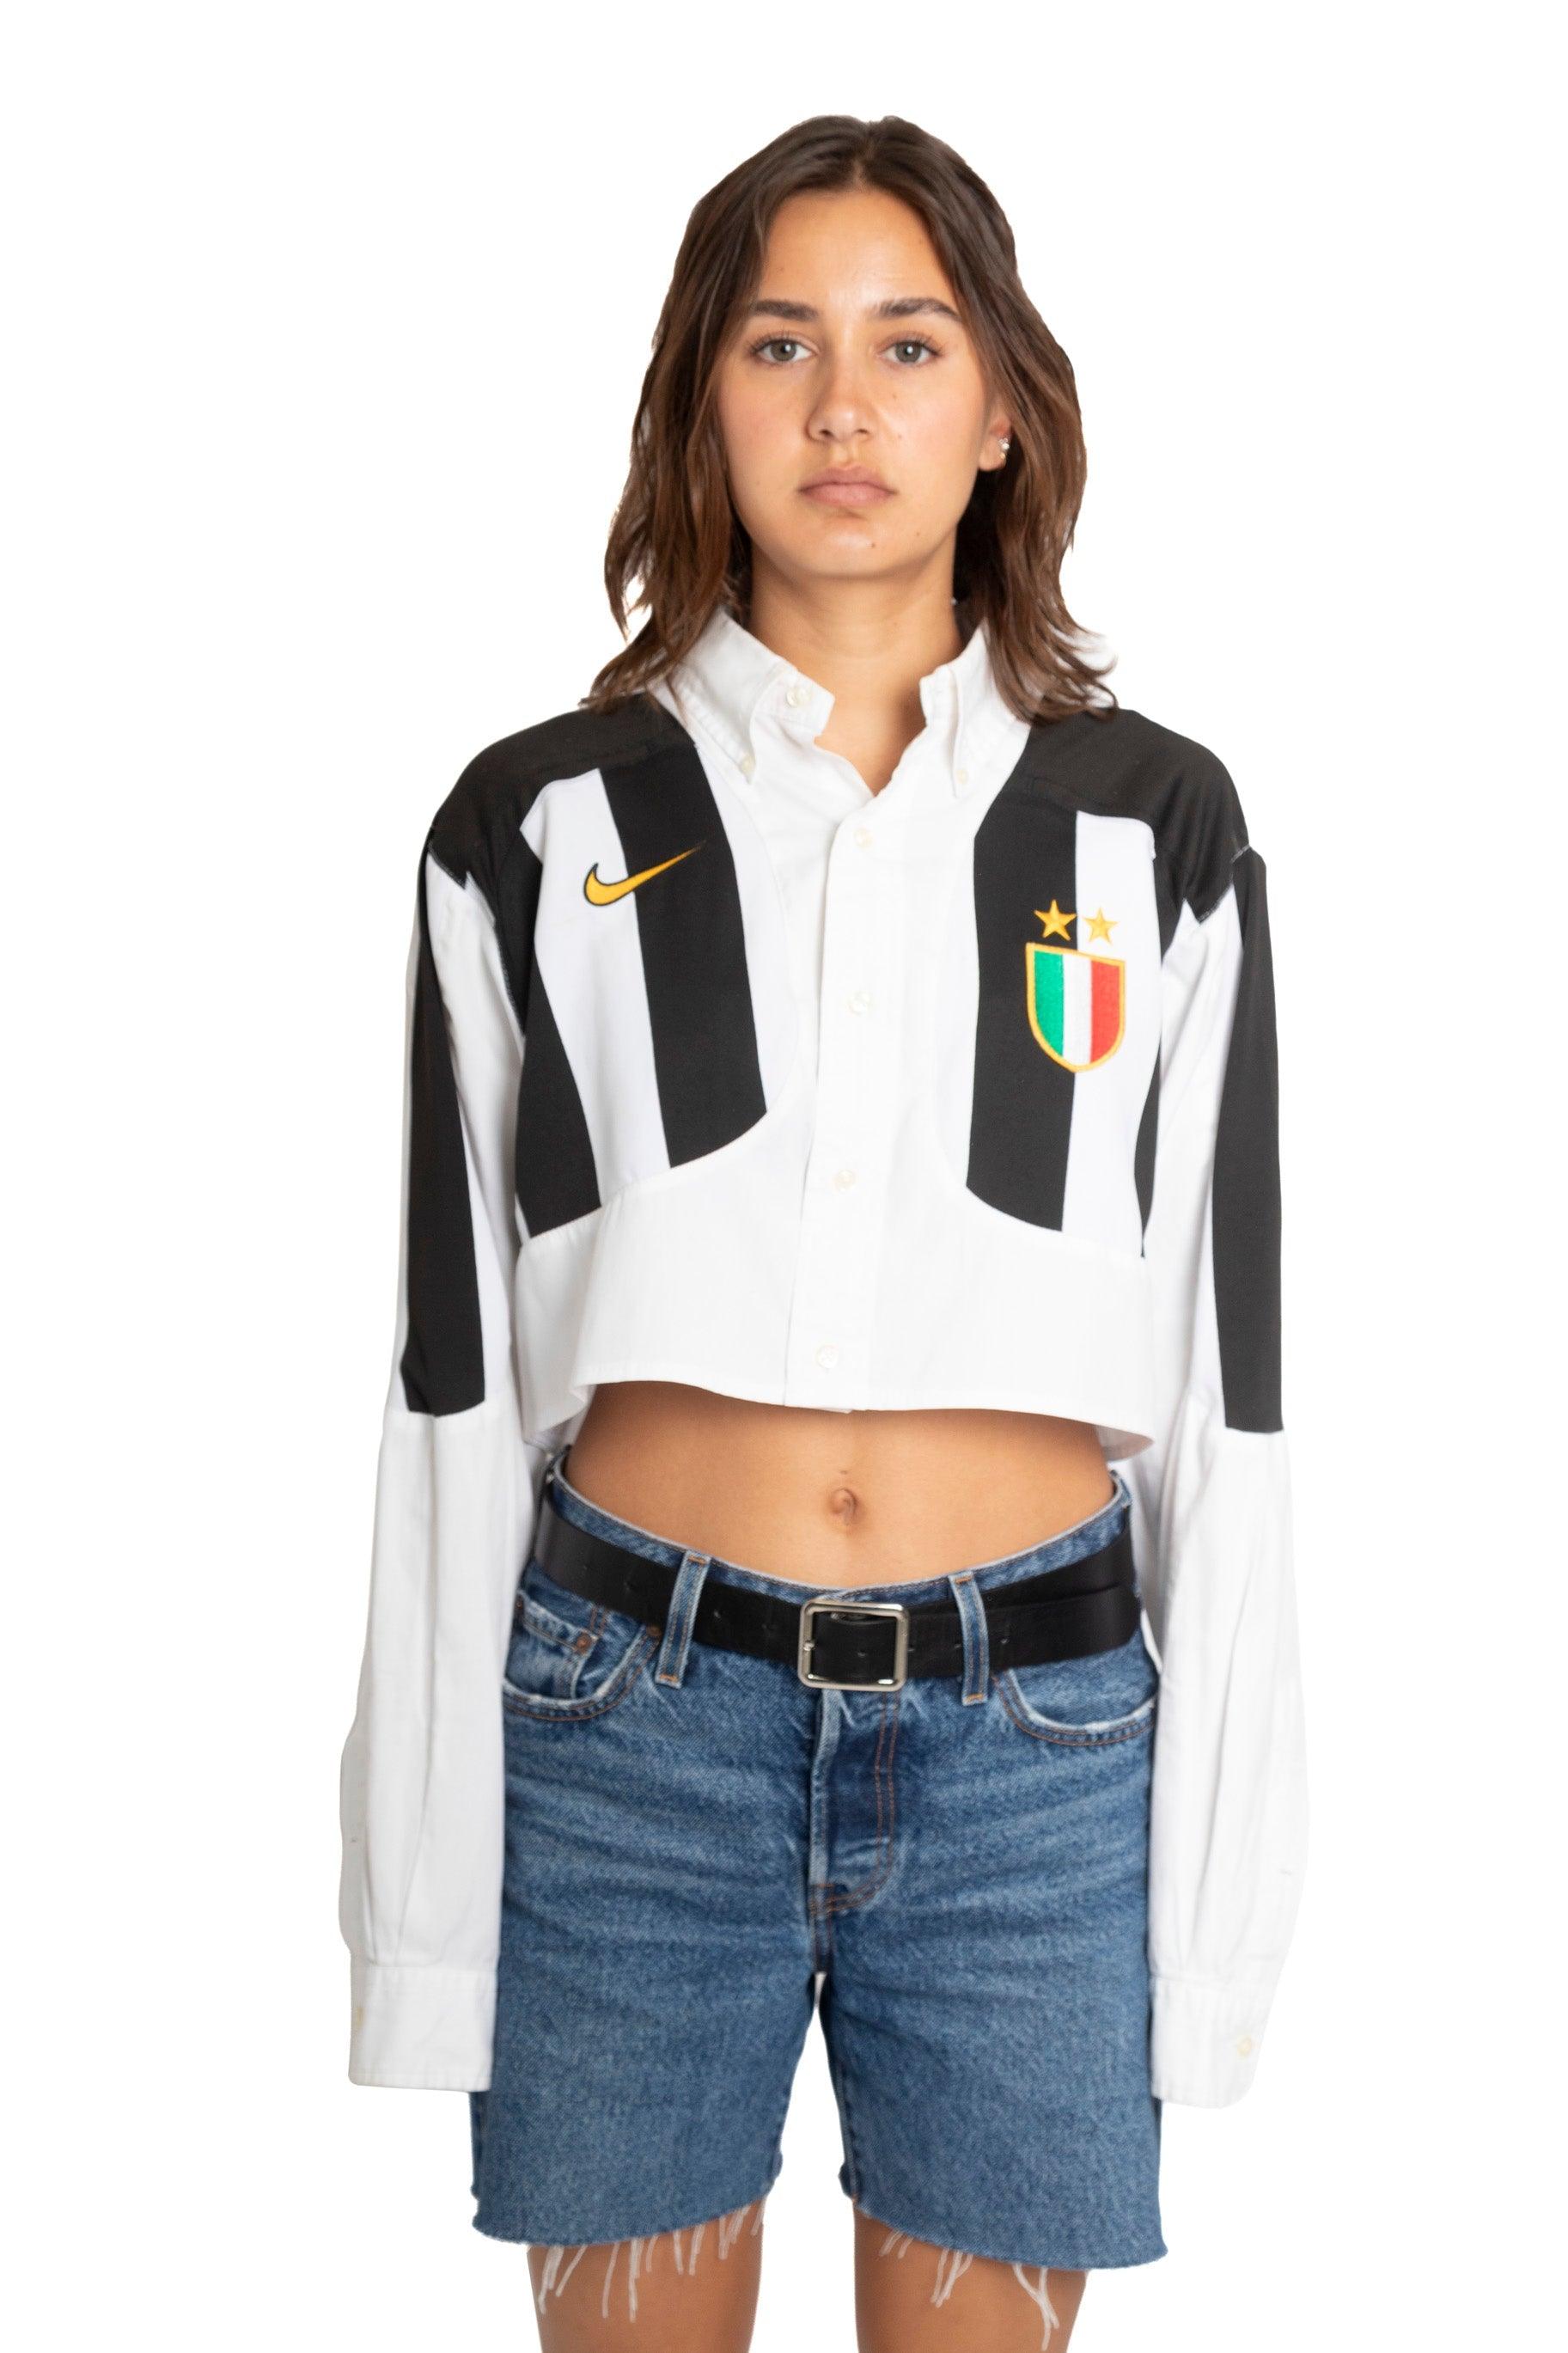 VT Rework : Juventus Cropped Shirt - Known Source